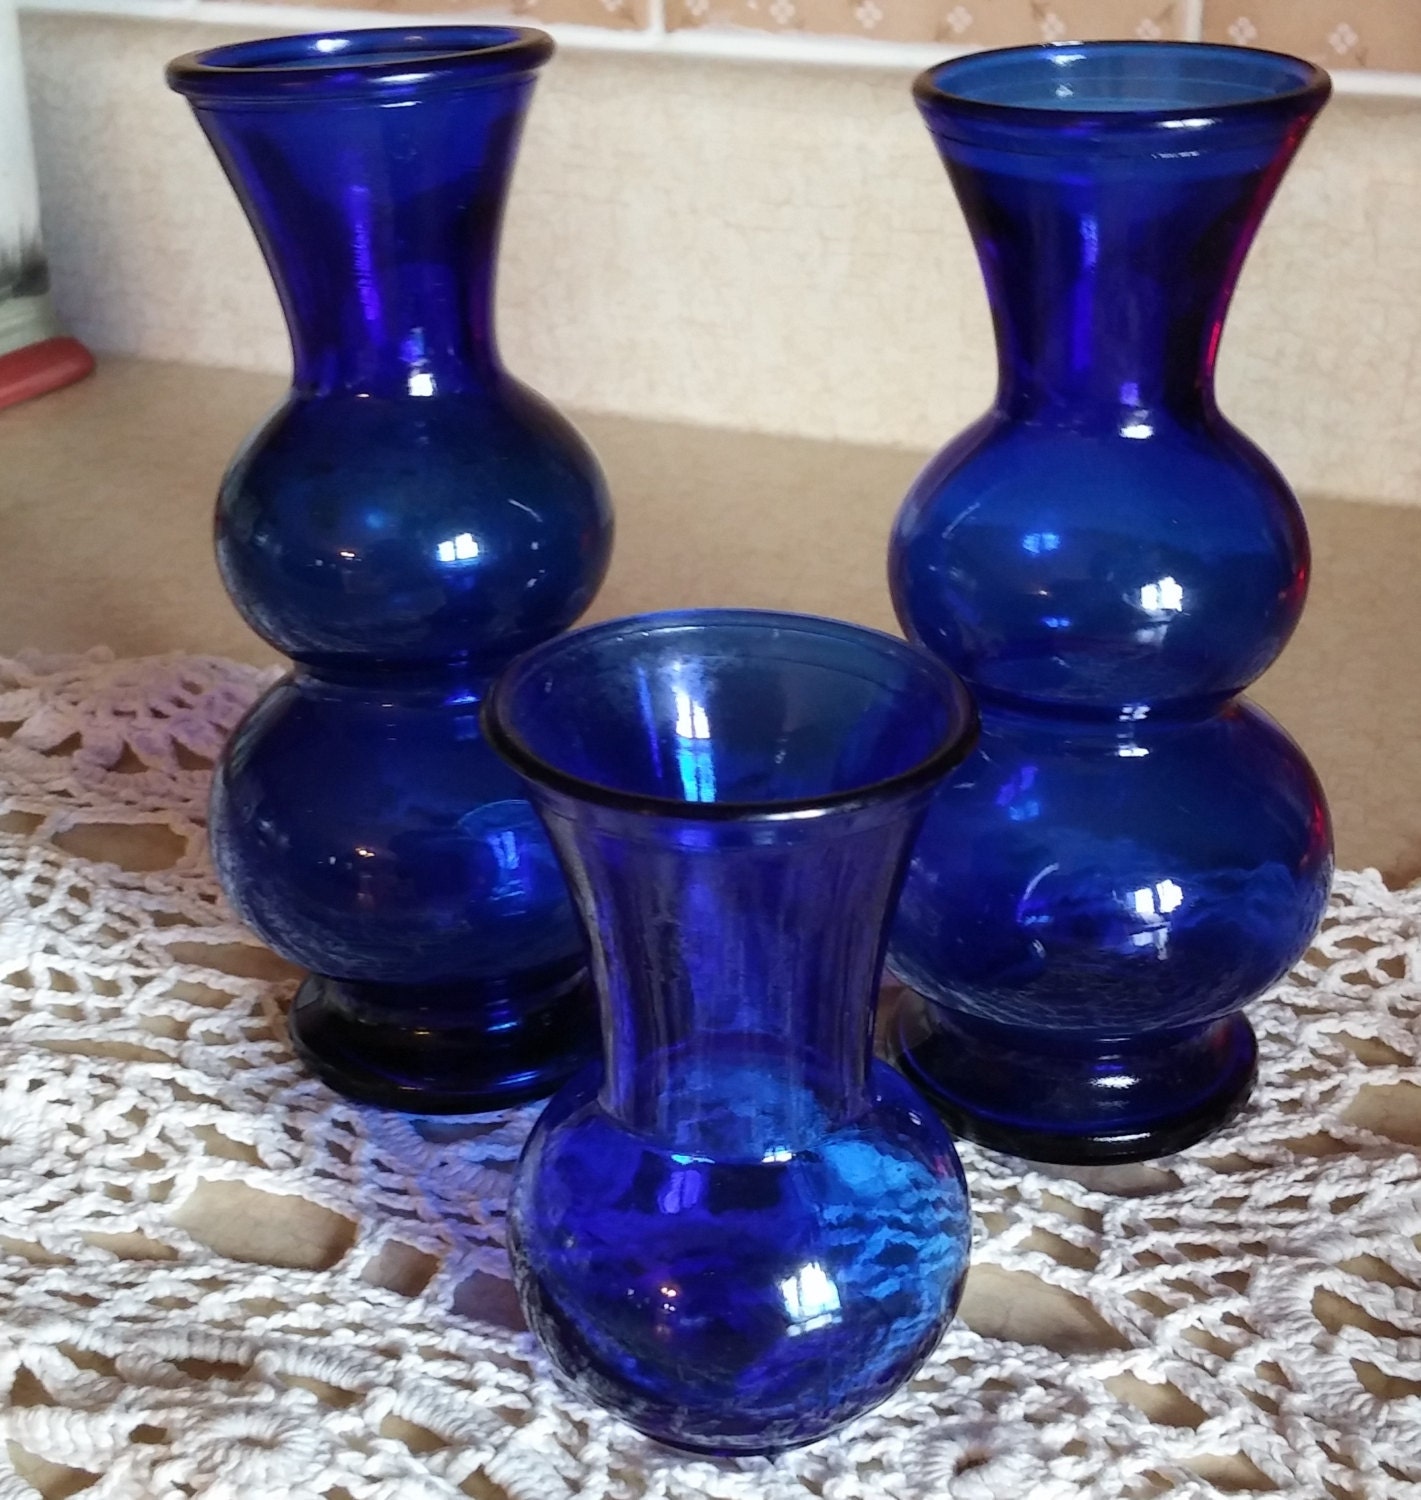 cobalt blue vase